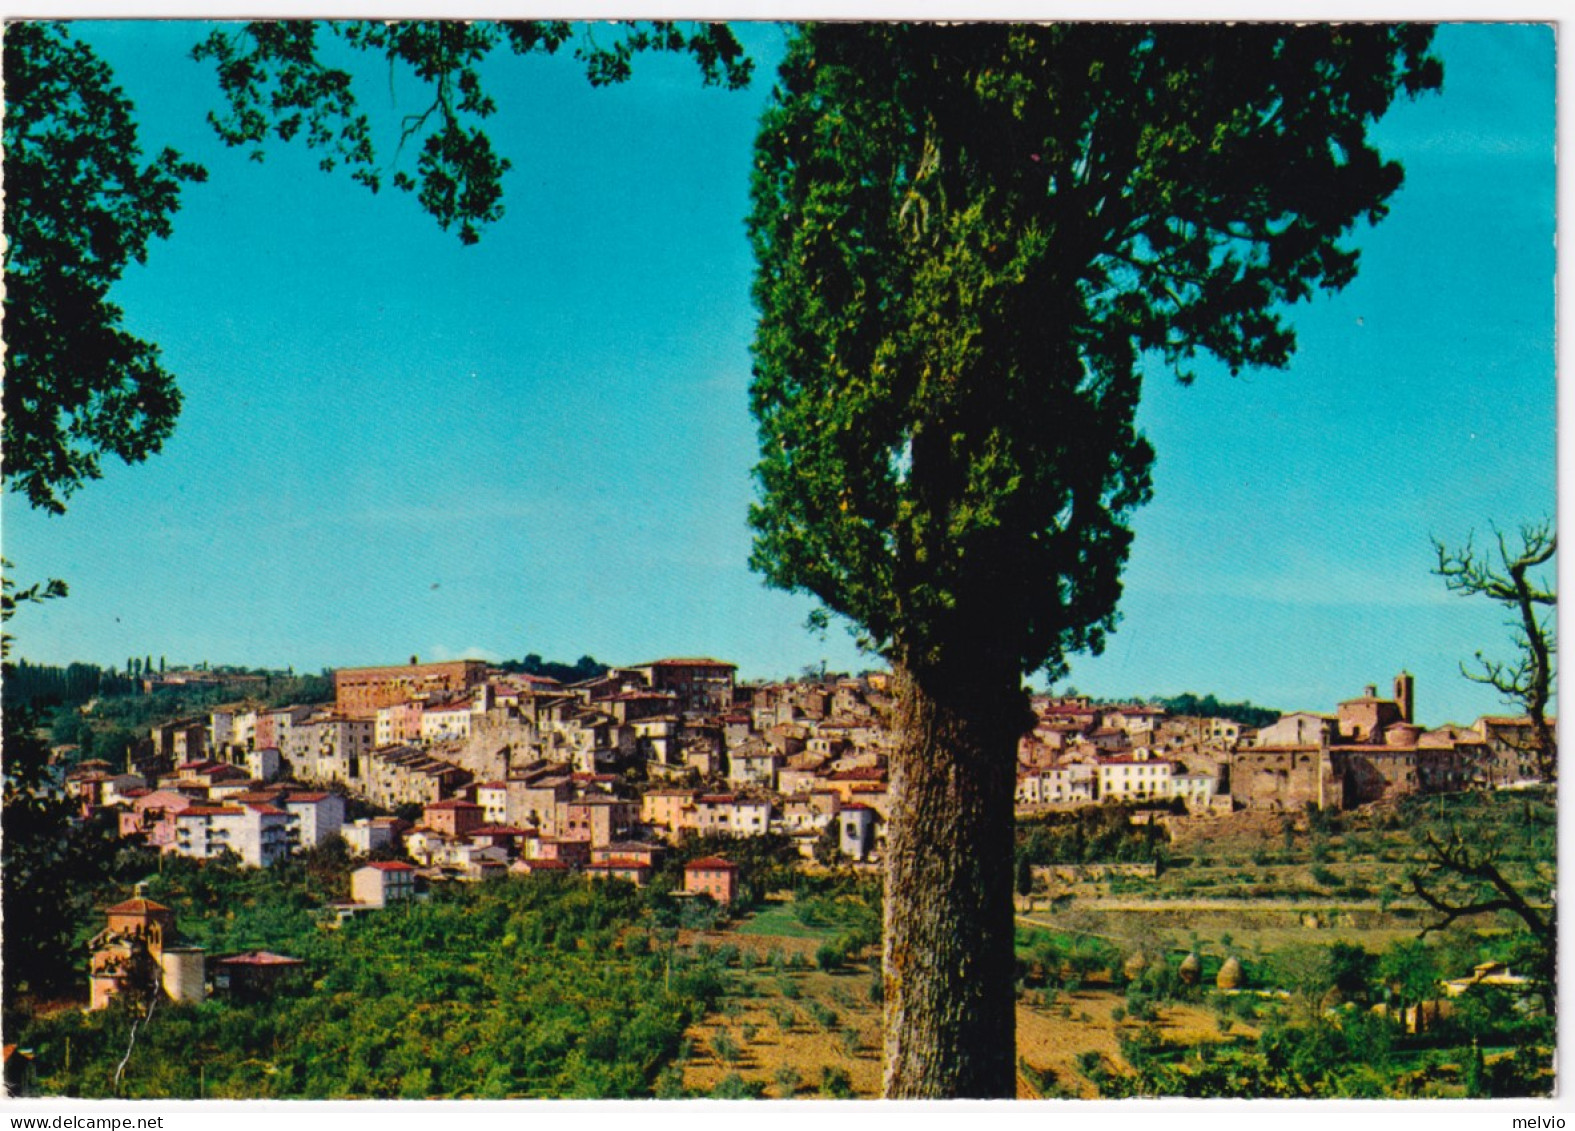 1973-CHIANCIANO TERME Panorama Viaggiata Affrancata NATALE'72 Lire 25 (1190) - 1971-80: Marcophilia